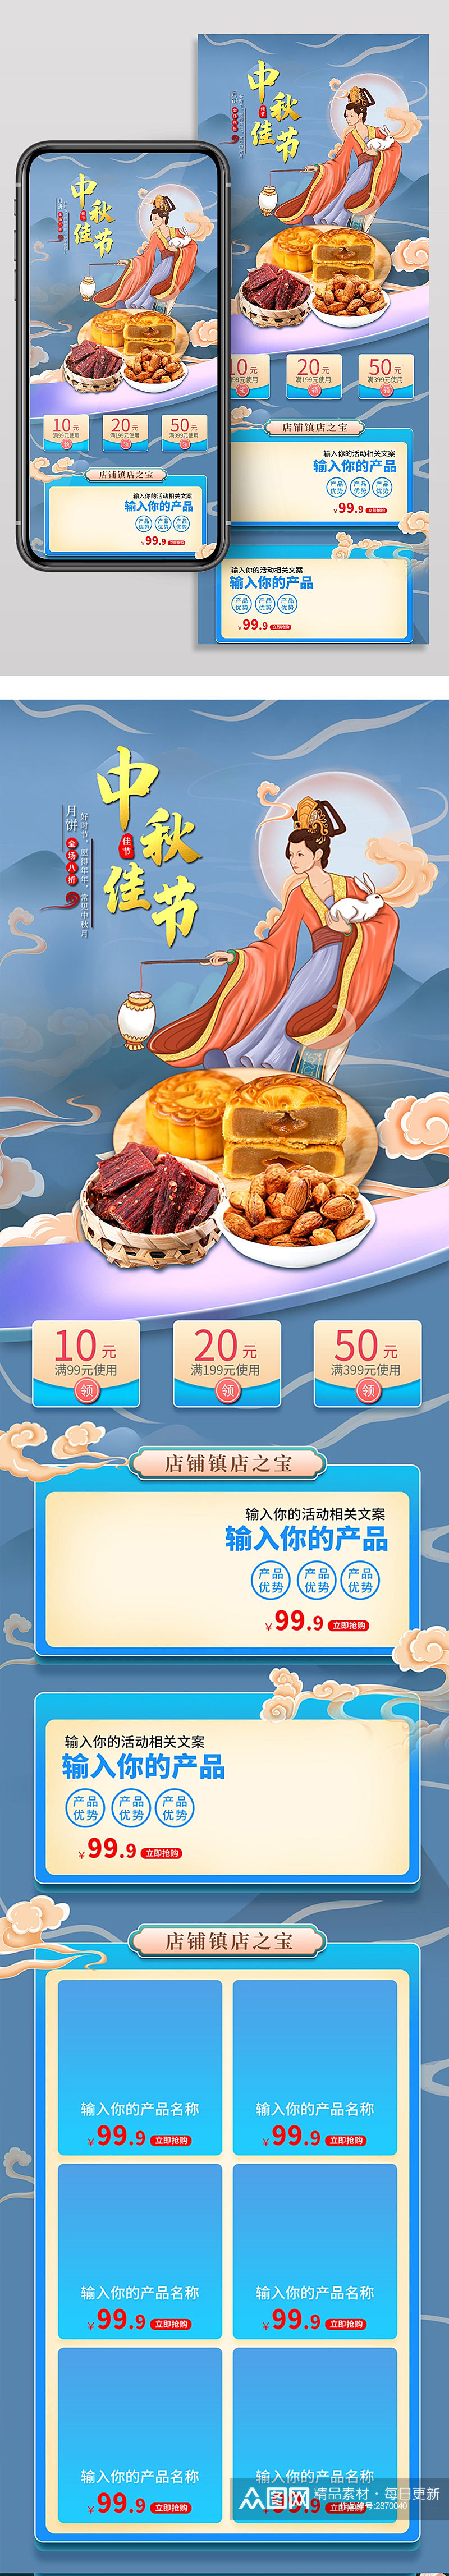 中秋节促销电商活动首页设计节月饼化妆品素材